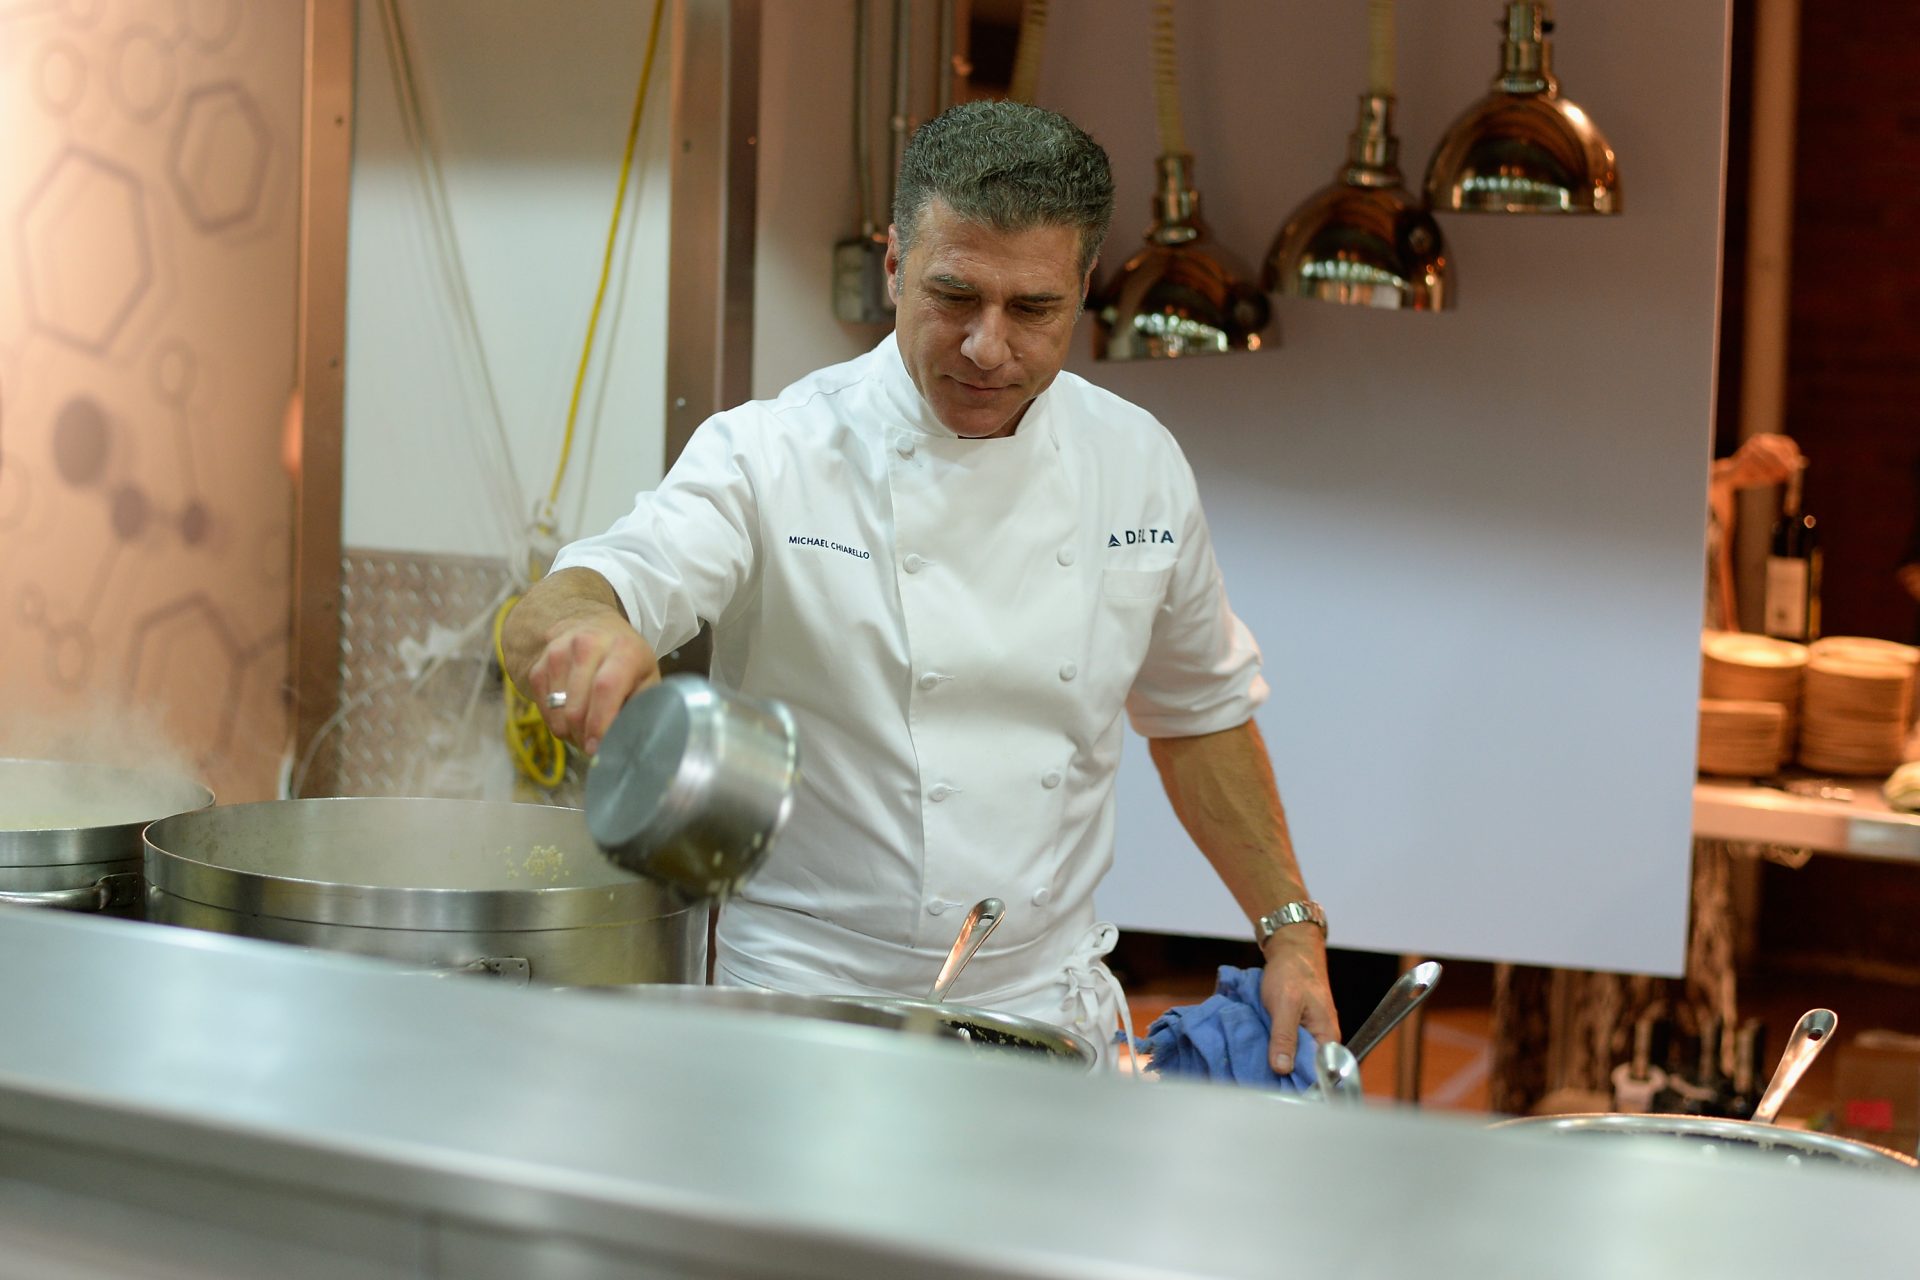 Ha muerto el televisivo chef Michael Chiarello, a causa de una reacción alérgica